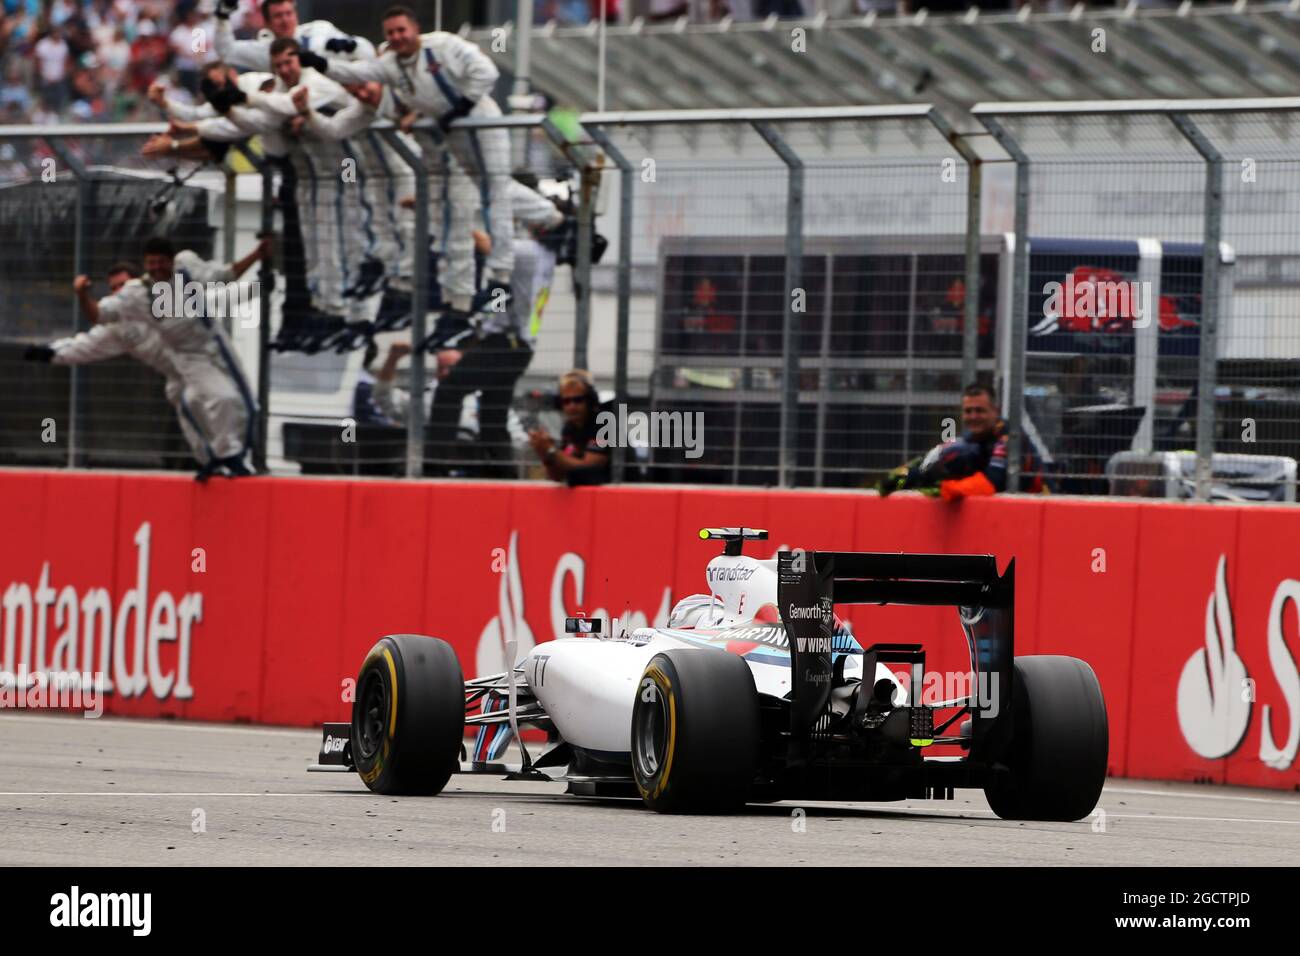 Secondo posto Valtteri Bottas (fin) Williams FW36 celebra come passa la sua squadra al termine della gara. Gran Premio di Germania, domenica 20 luglio 2014. Hockenheim, Germania. Foto Stock